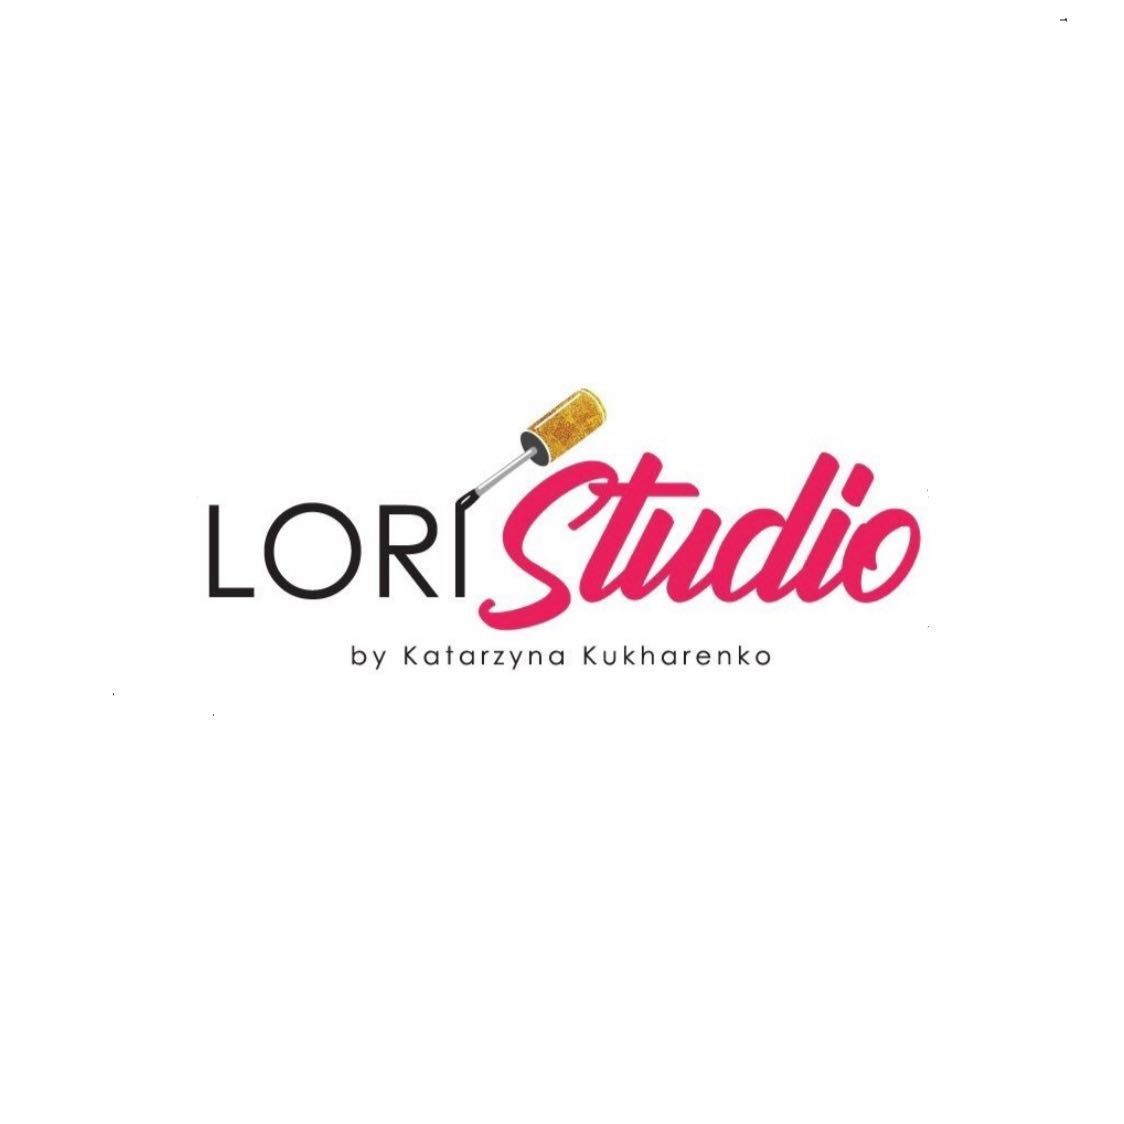 Lori Studio  Kosmetologia i Depilacja Laserowa, Wyspowa 2, Lokal 1, 03-687, Warszawa, Targówek